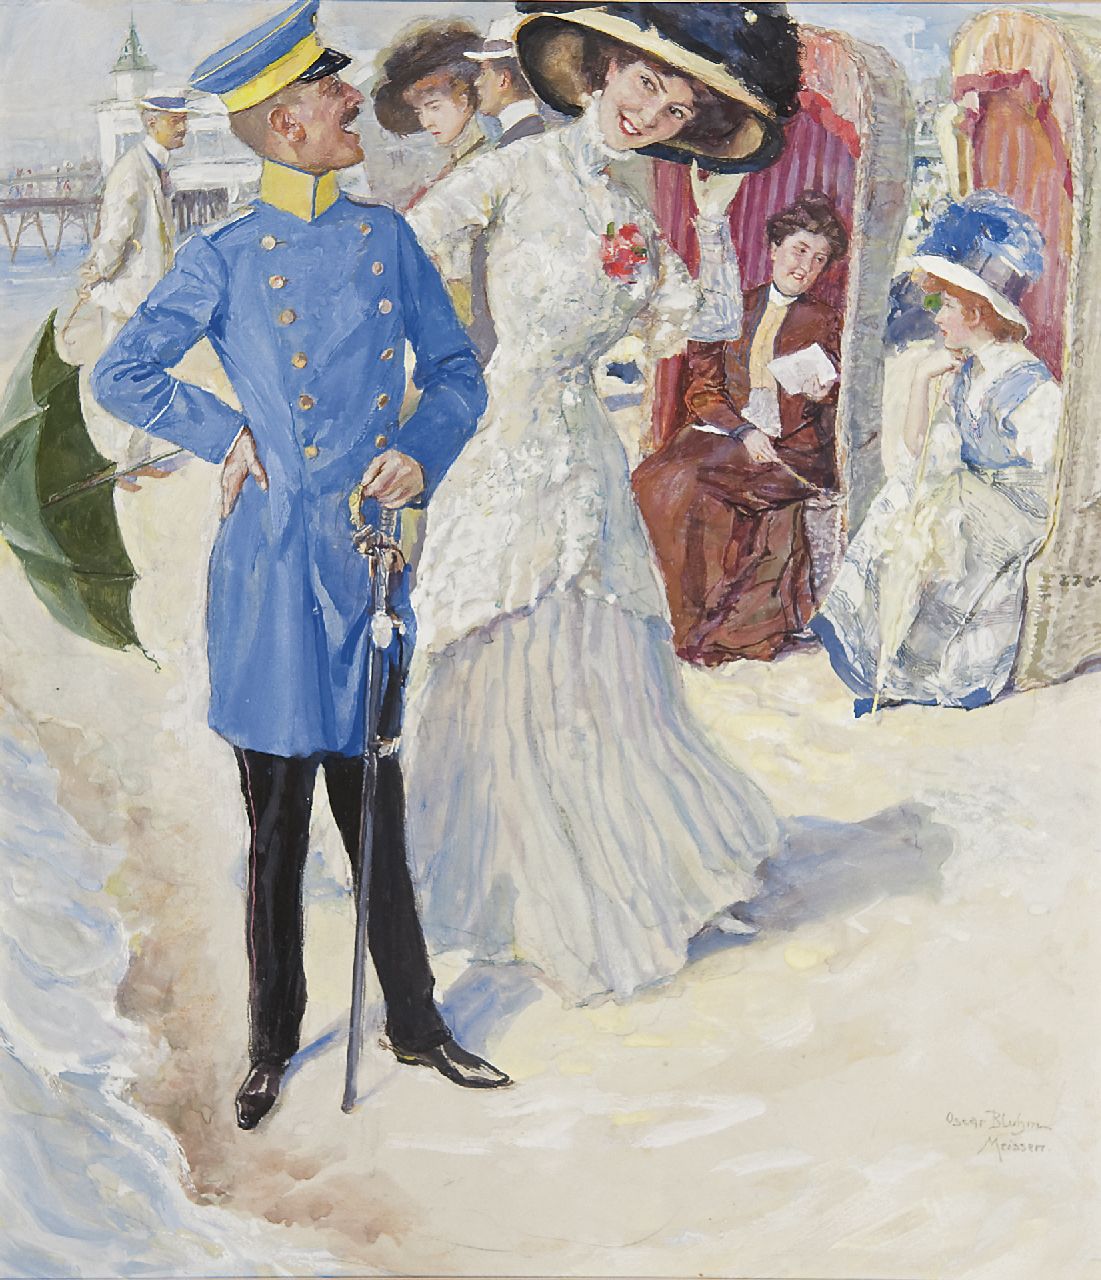 Oskar Arthur Bluhm | Meeting on the beach, Kreide und Gouache auf Papier, 37,0 x 32,2 cm, signed l.r. und te dateren ca. 1909